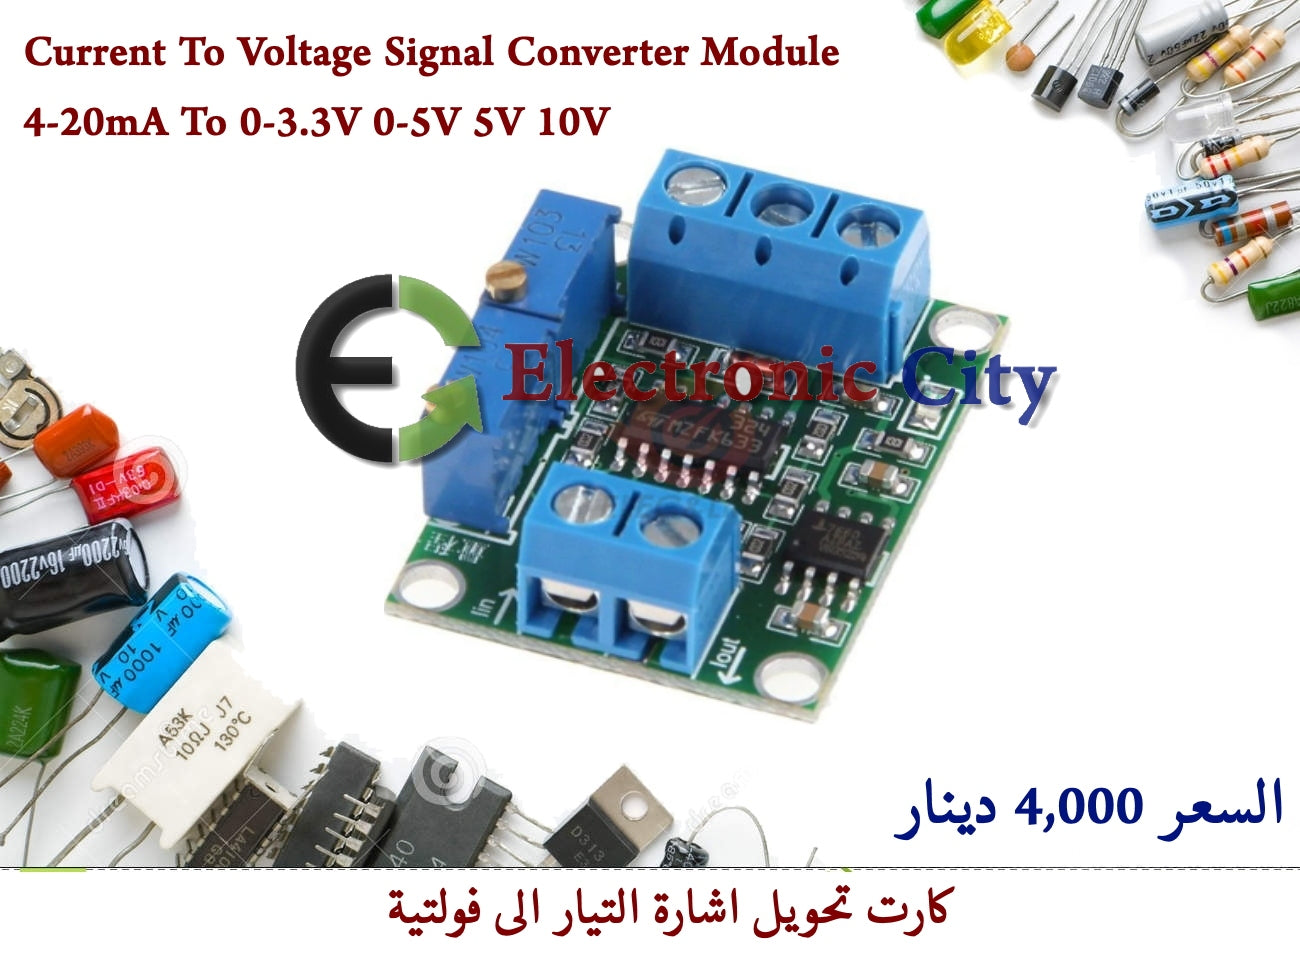 Current To Voltage Signal Converter Module 4-20mA To 0-3.3V 5V 10V 15V #R1 012323